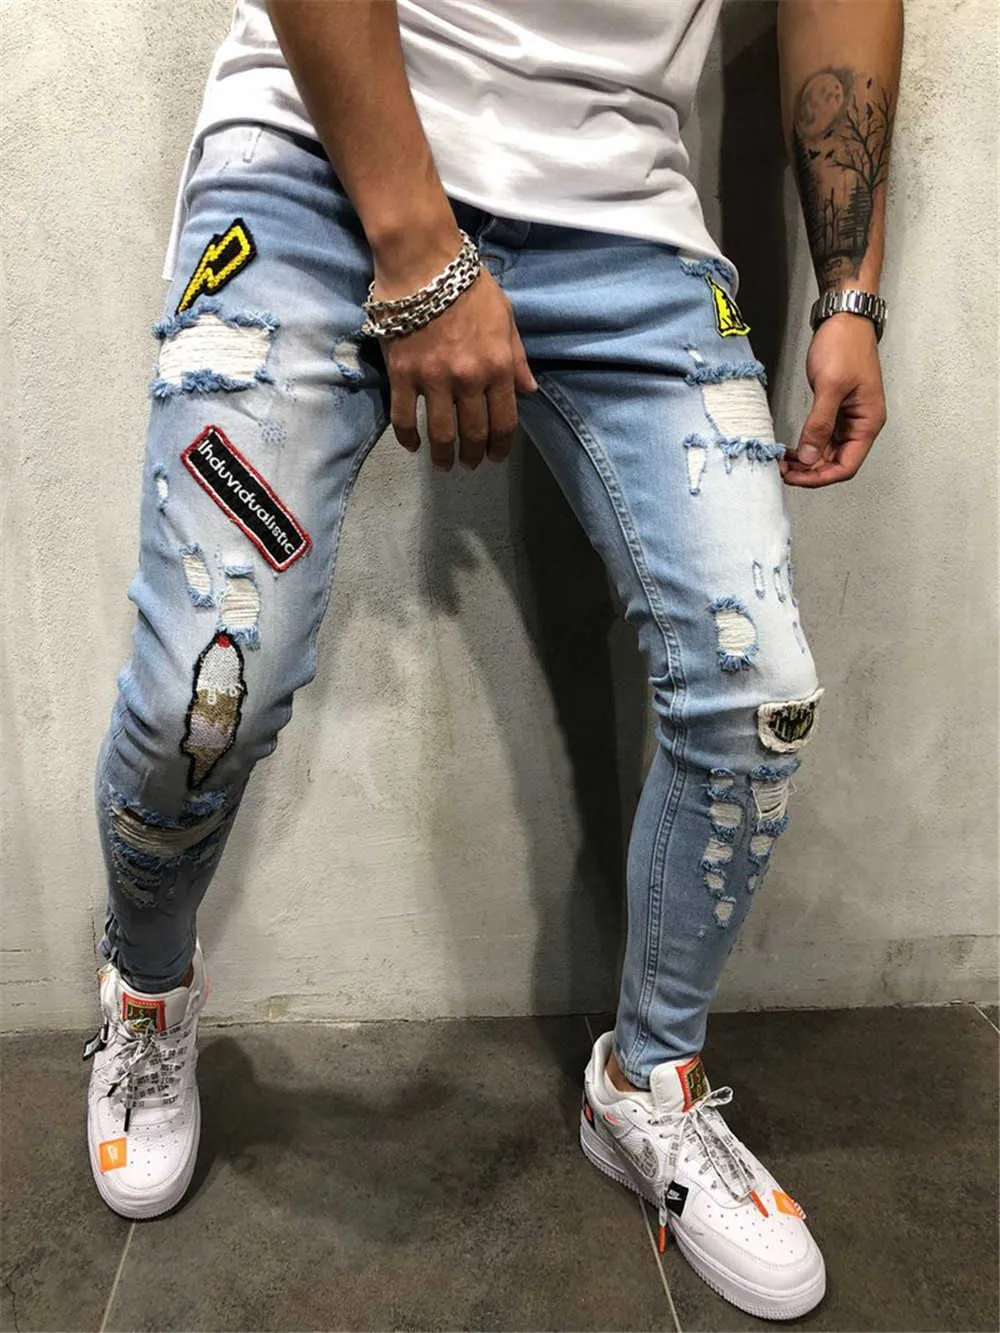 Хлопок смешанные тощие отверстия разорванные джинсы джинсов для мужчин хип-хоп Slim Fit Streetwear Beatwork значок проблемных синих карандашей брюки X0621